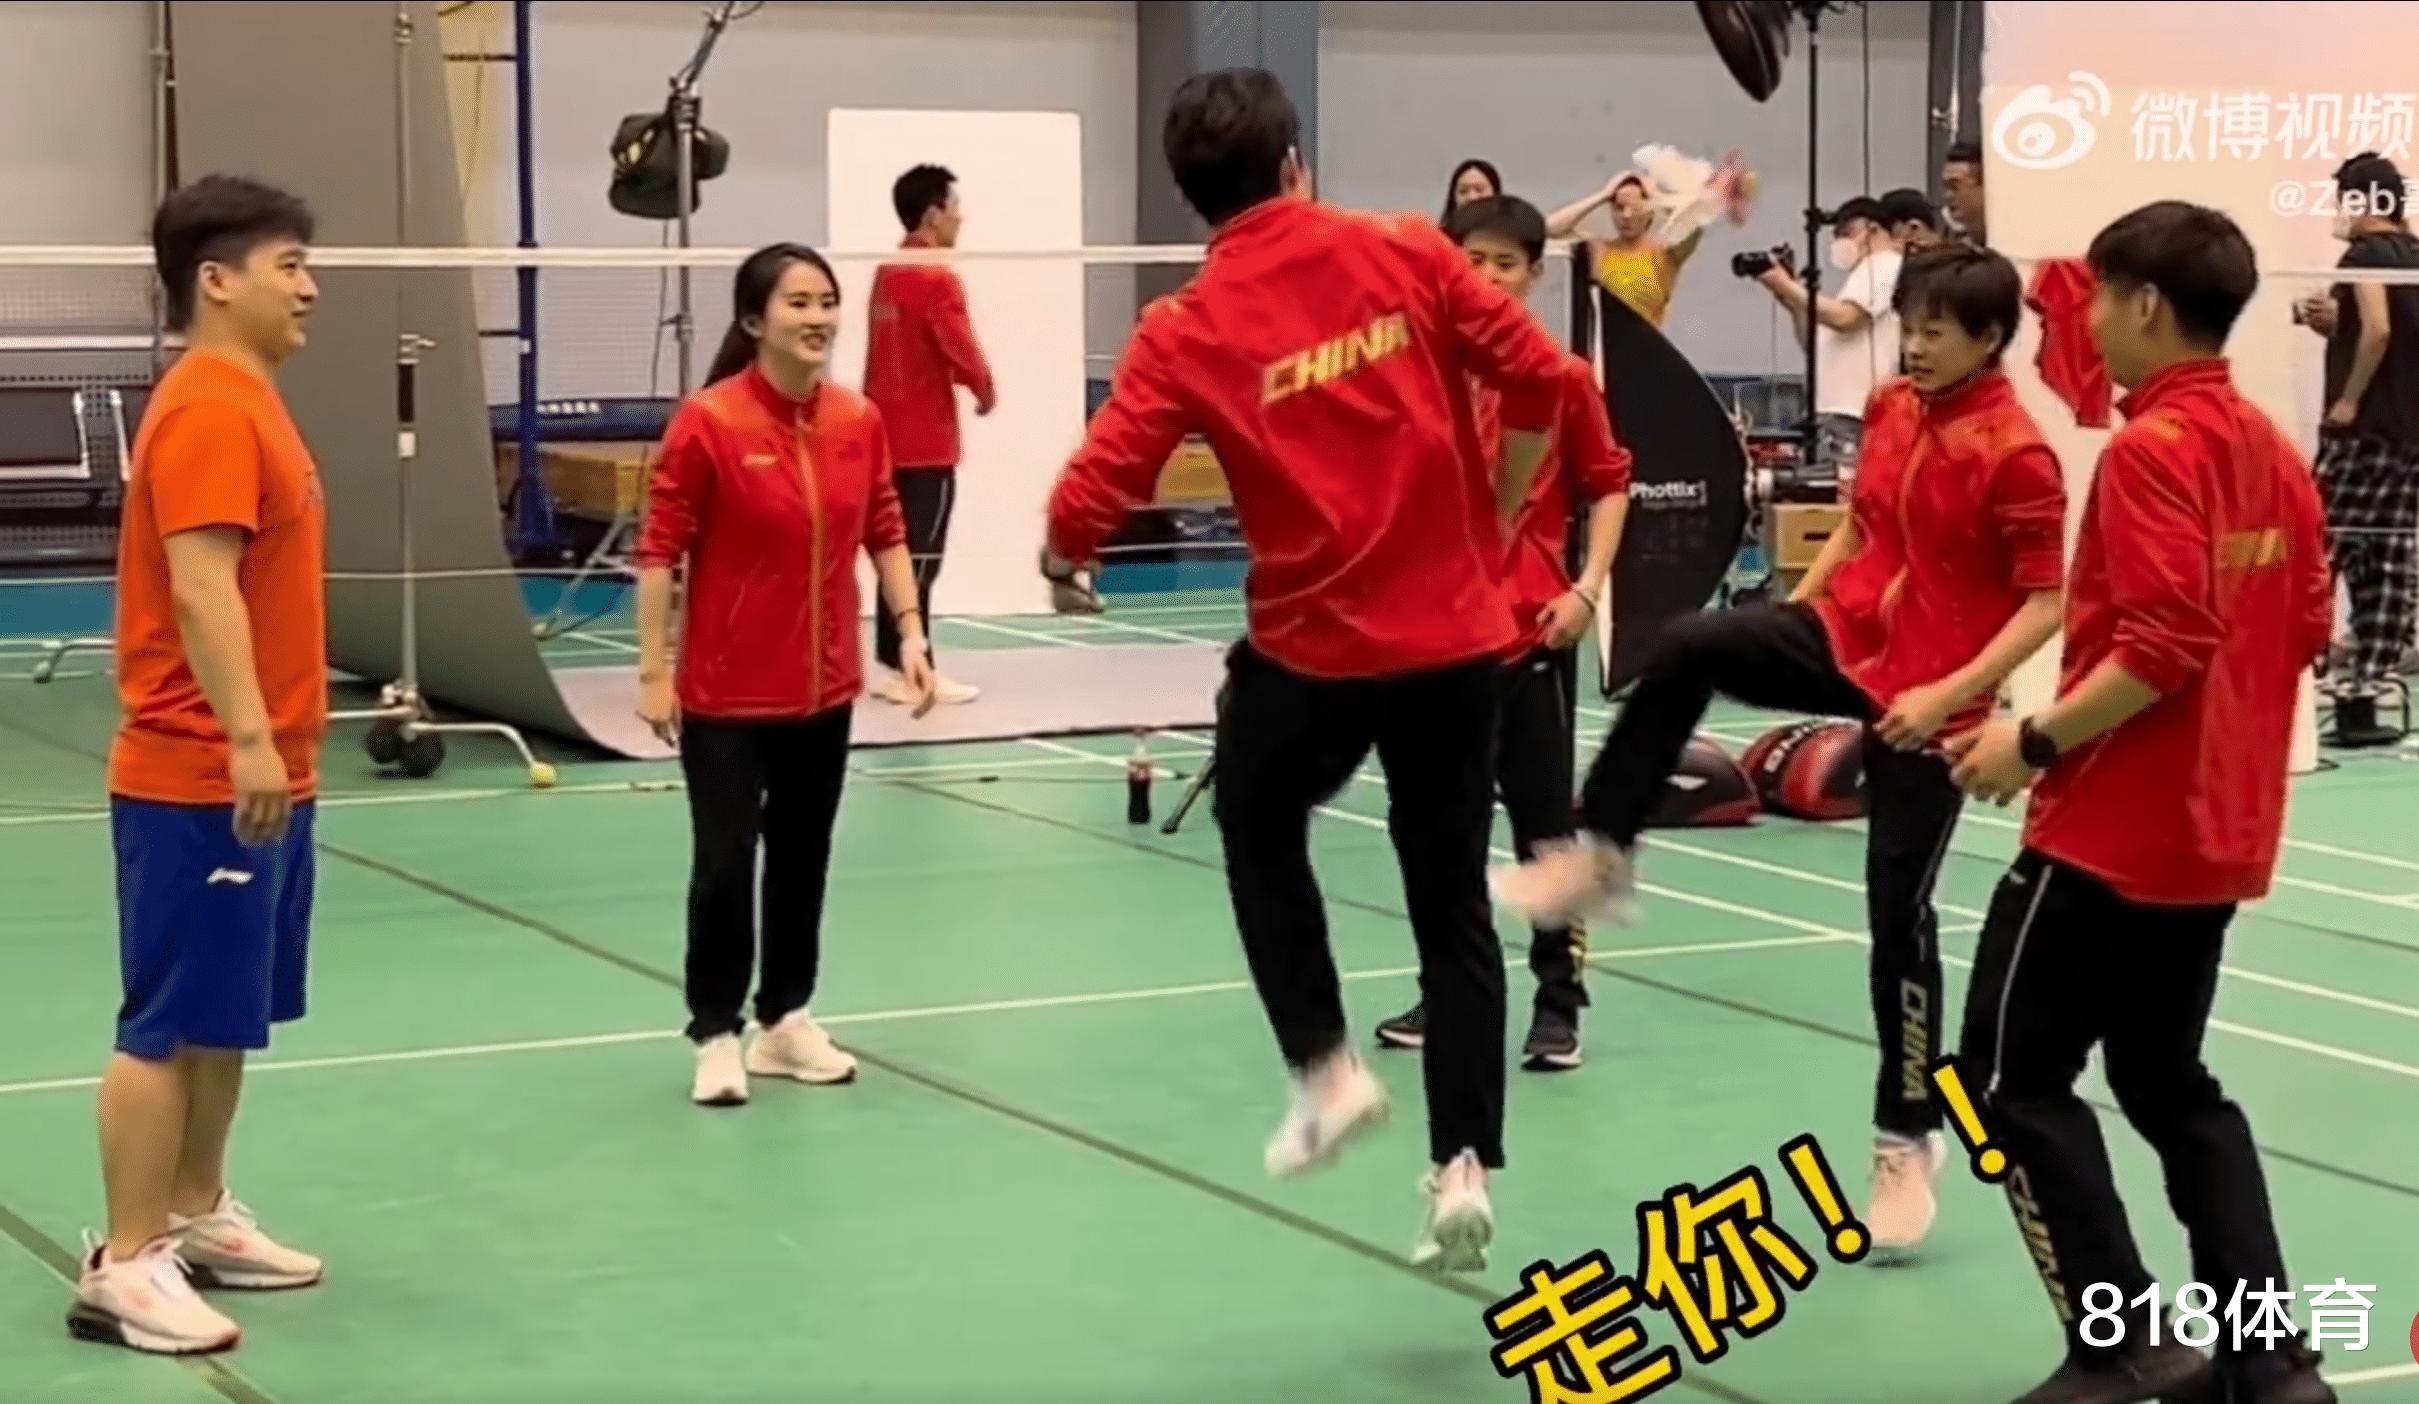 可爱! 陈若琳带全红婵等队员踢毽球, 红姐没够到被打趣: 腿短了踢不到(7)